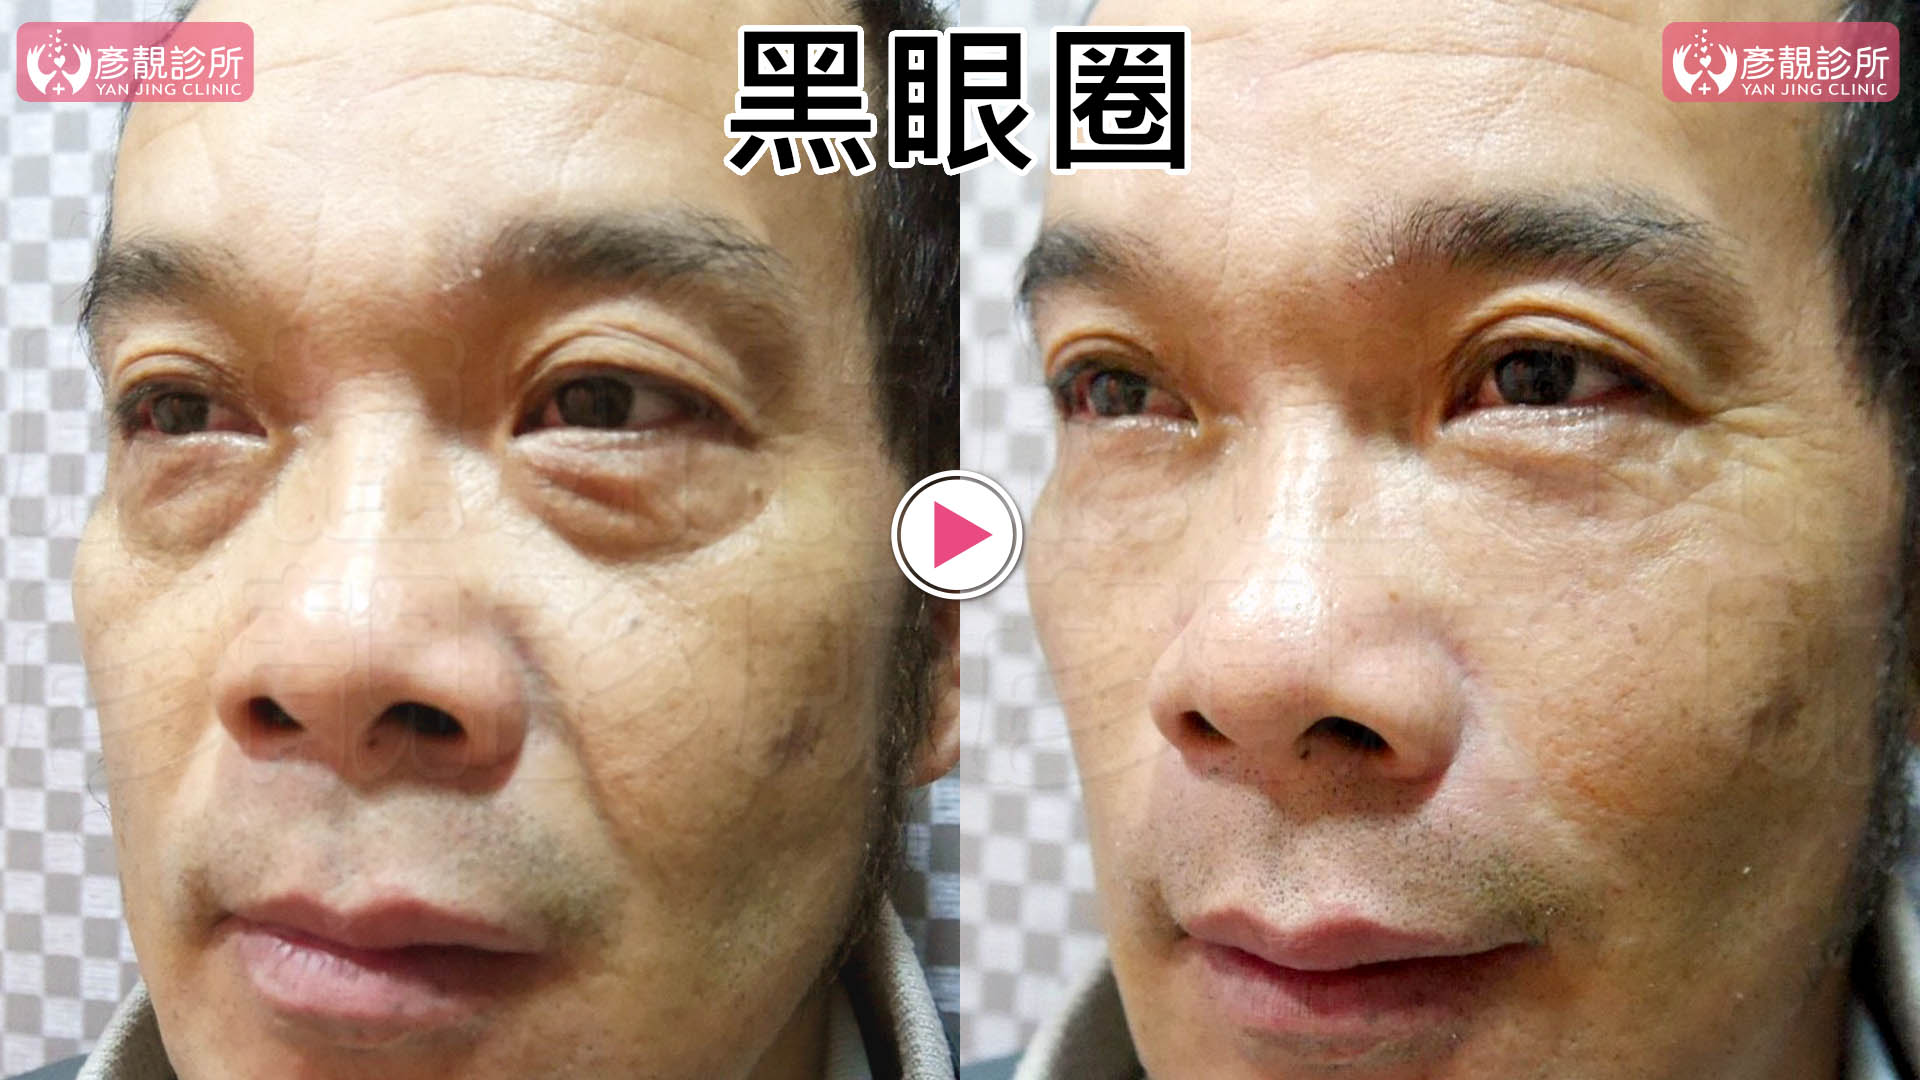 彥靚診所治療黑眼圈２大原因-黑眼圈淡化推薦玻尿酸雷射